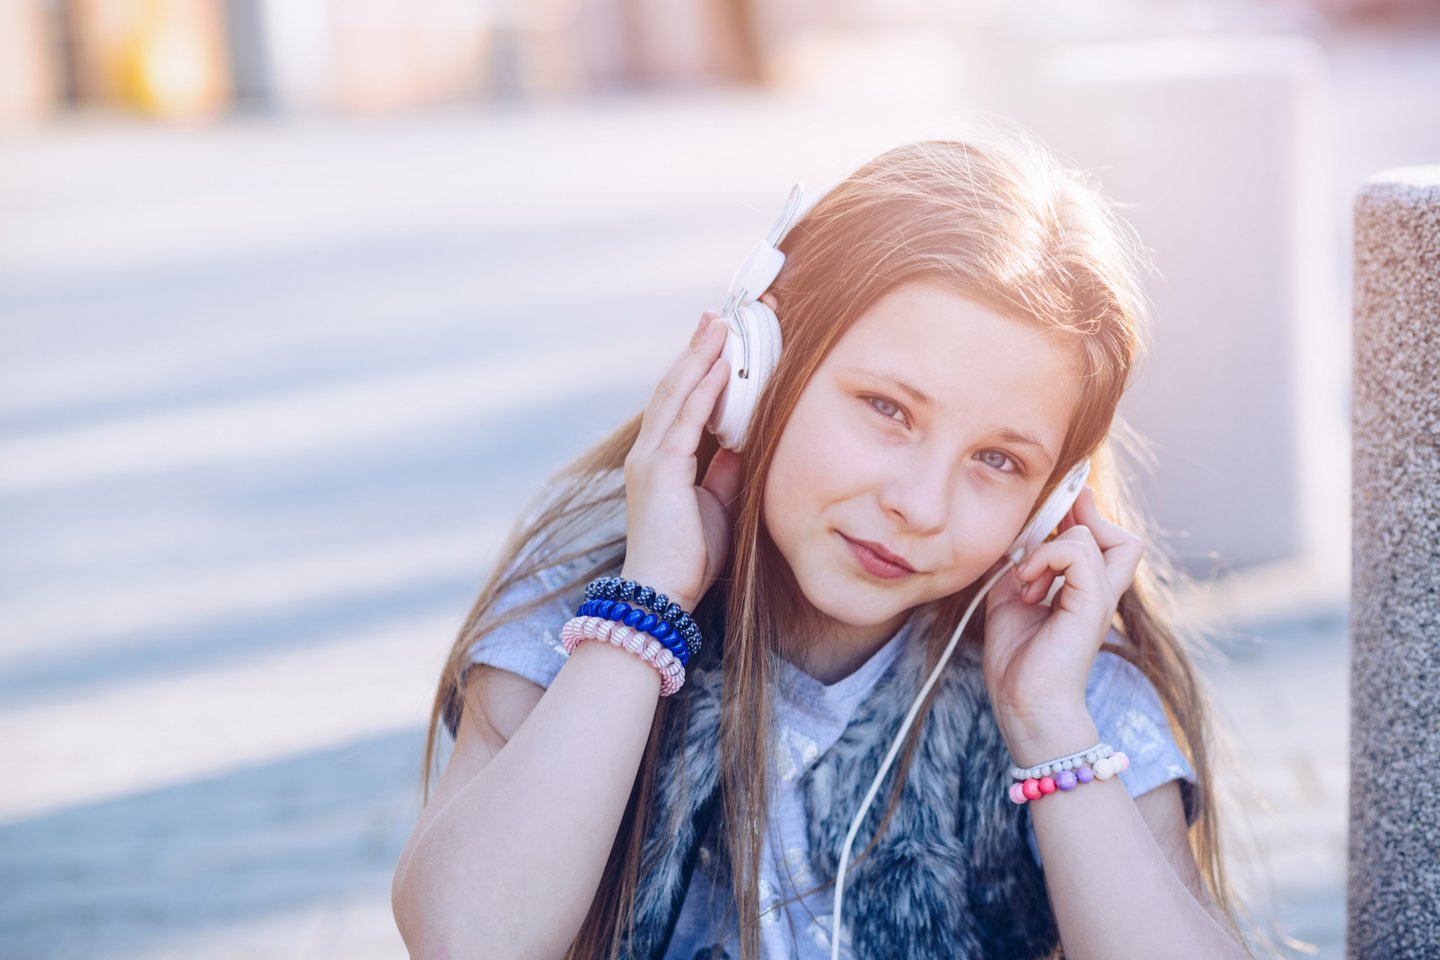  Naujas tyrimas parodė, kad kalbos raidos sutrikimą turintiems vaikams gali būti naudinga klausytis ritmiškų muzikinių ritmų.<br> 123rf nuotr.